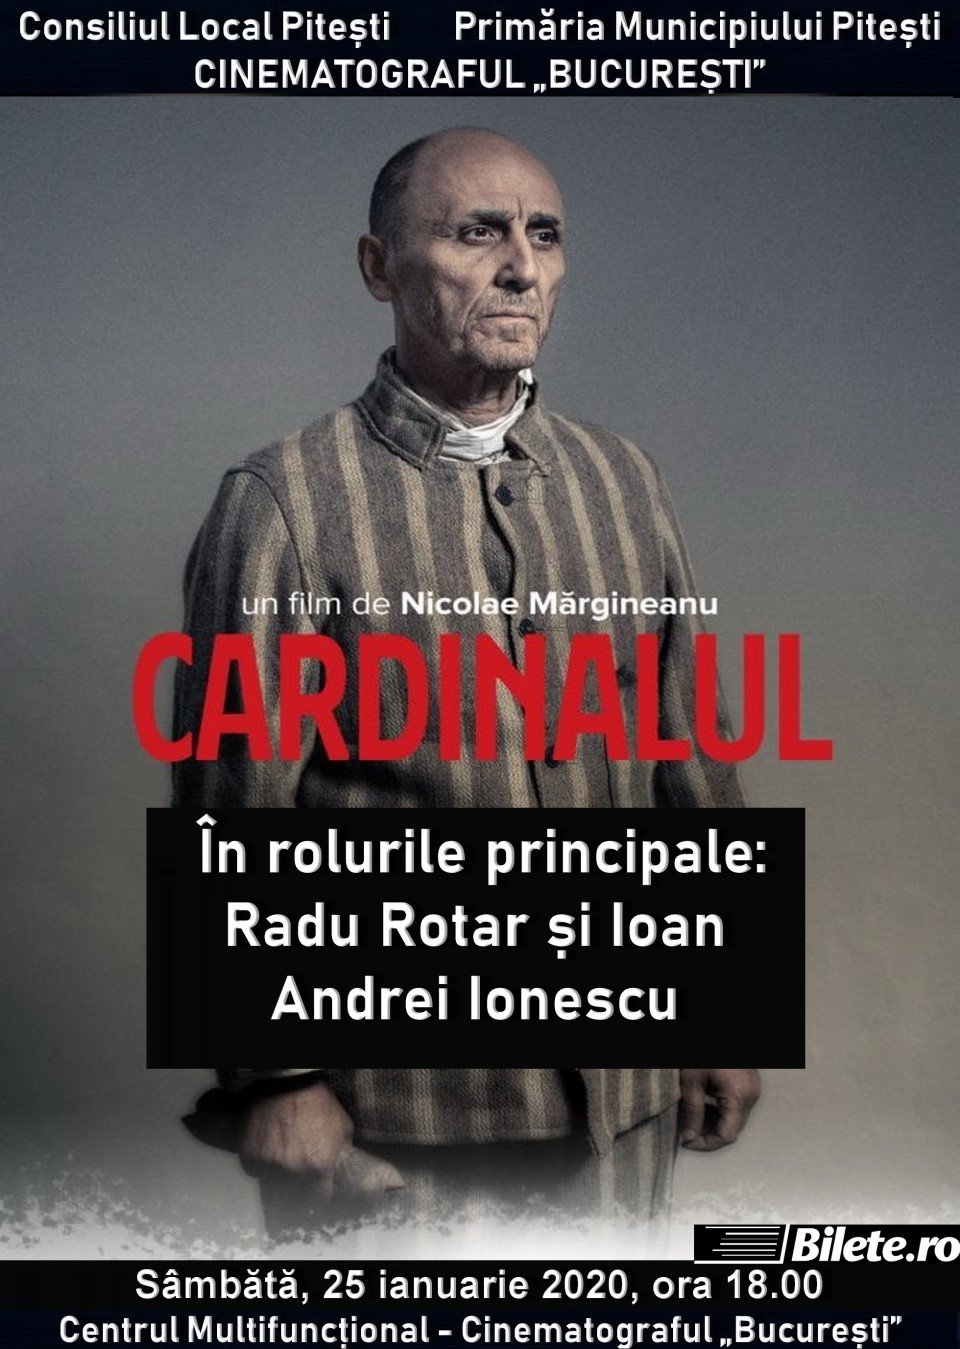 Cardinalul la Cinema Bucuresti - 25 ian 2020